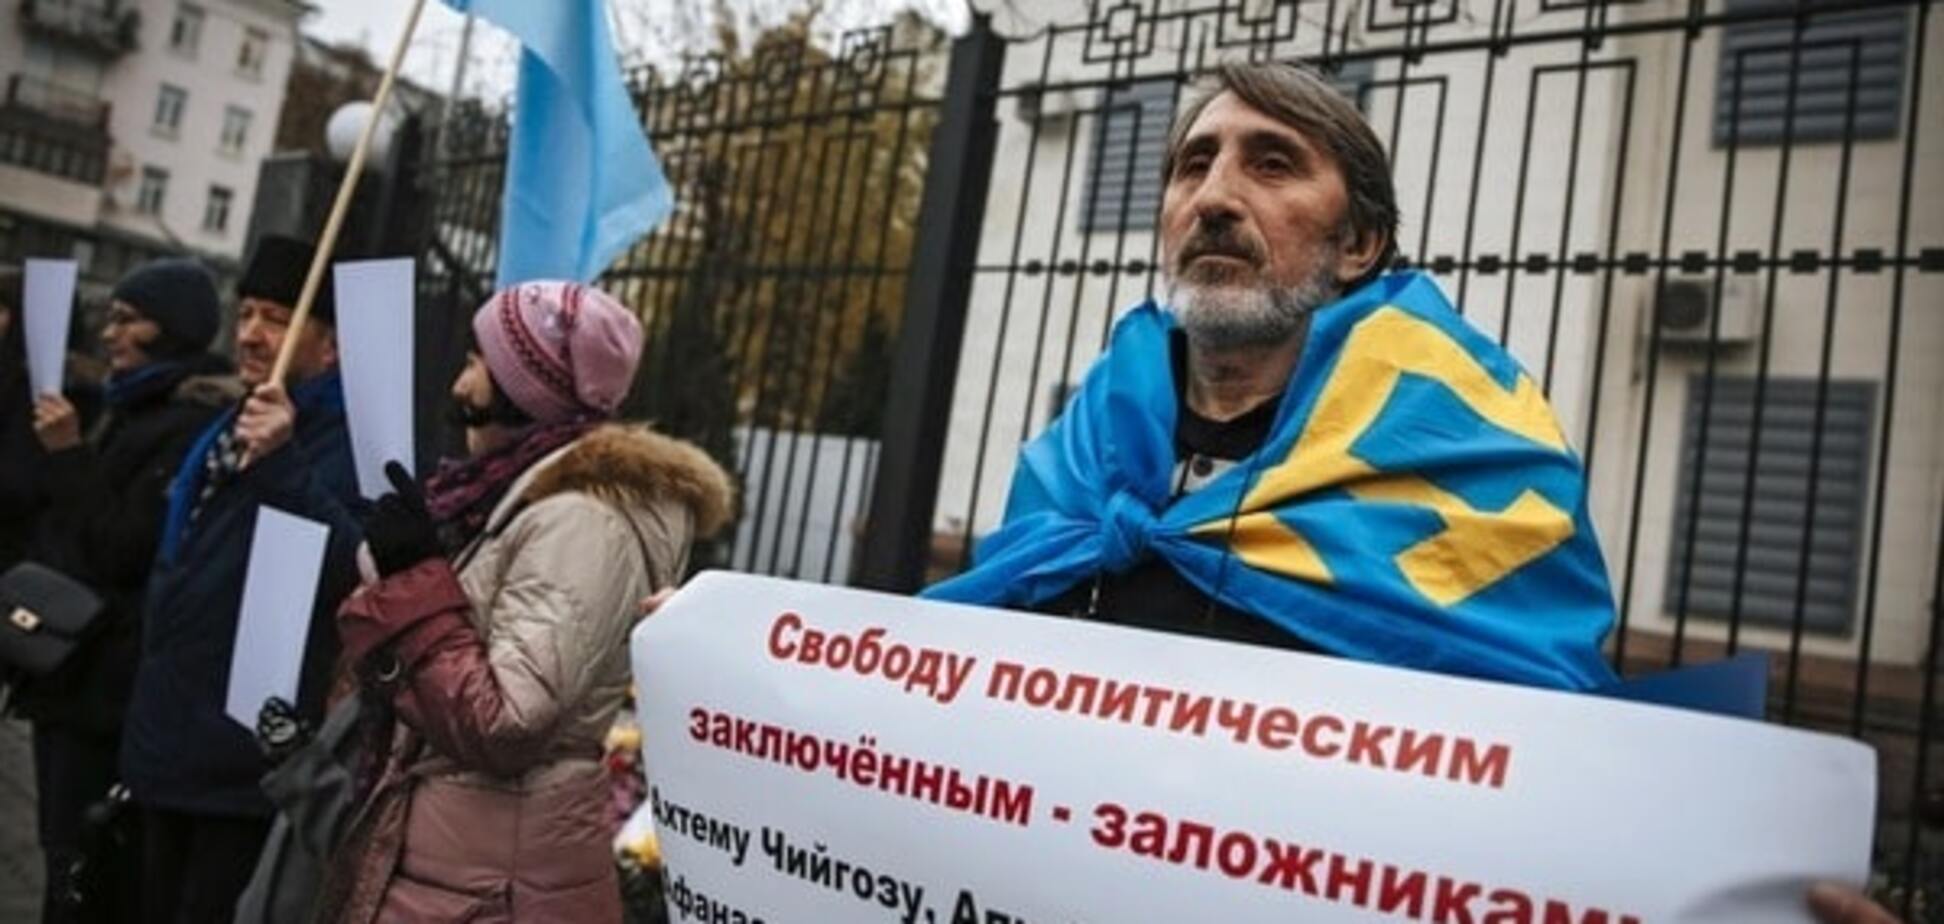 Ислямов: крымских татар готовят к 'эвакуации', будут вывозить целыми селами. Опубликован документ